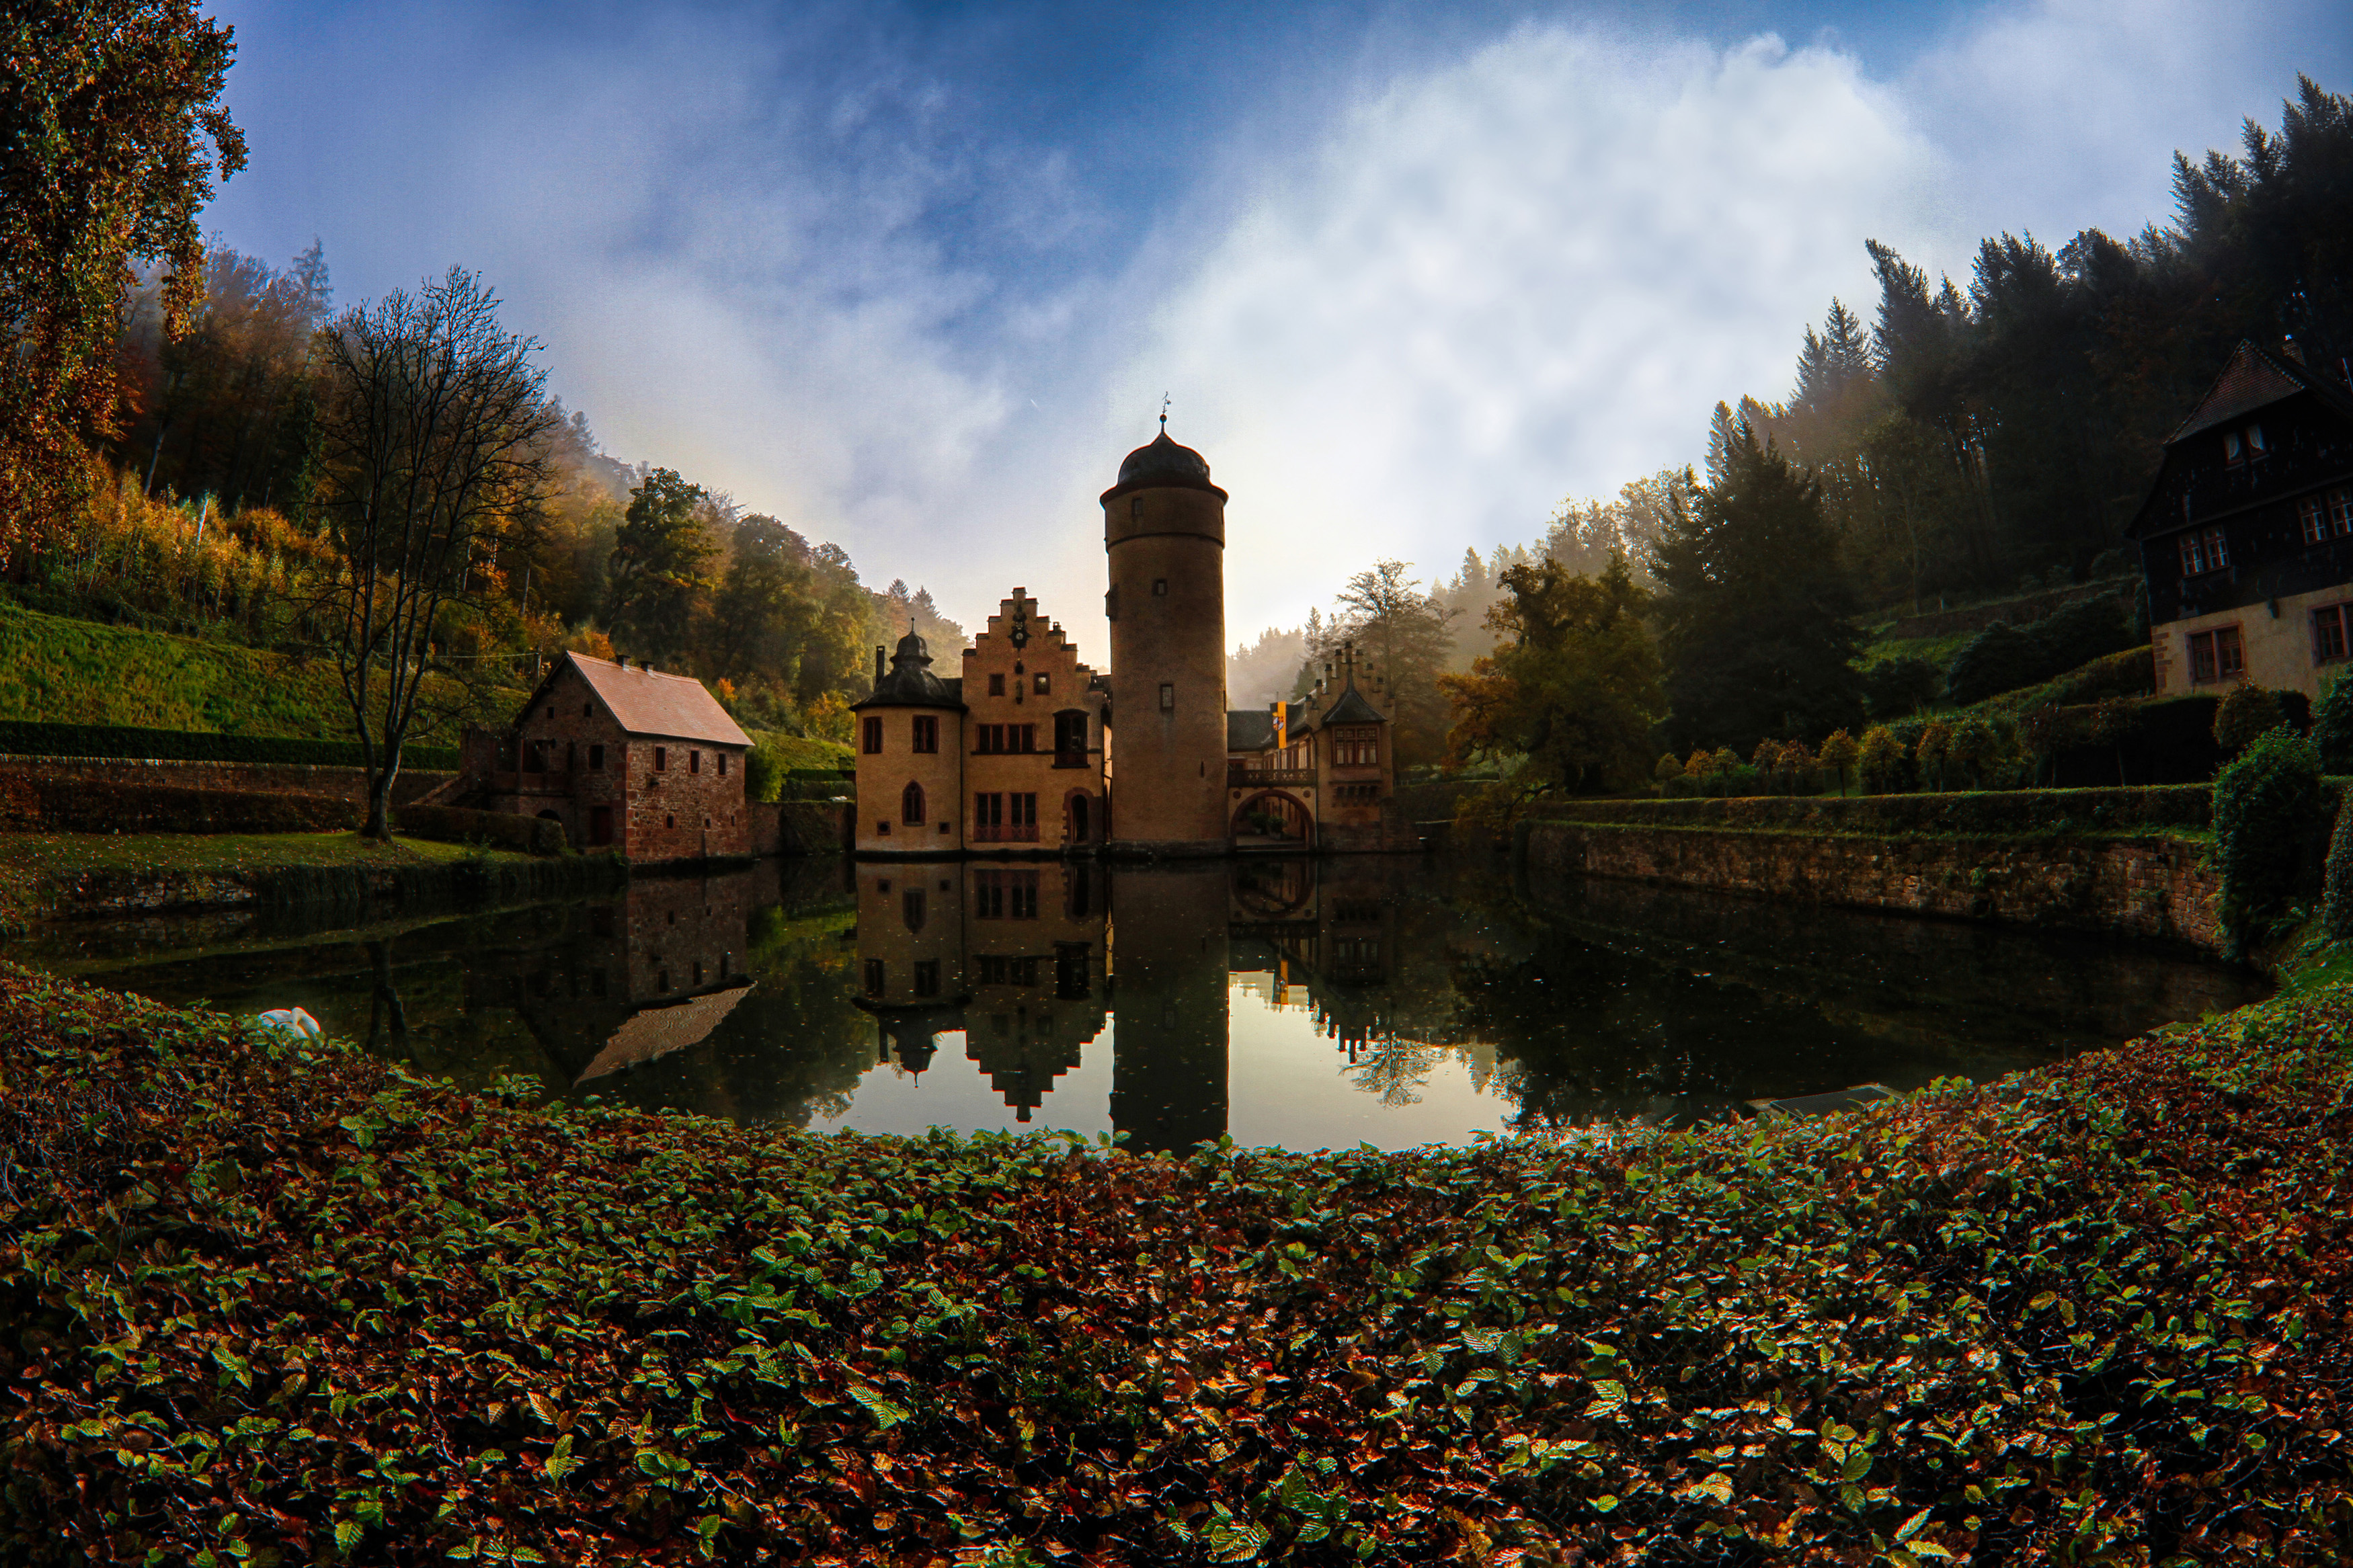 Schloss Mespelbrunn im Herbst.
